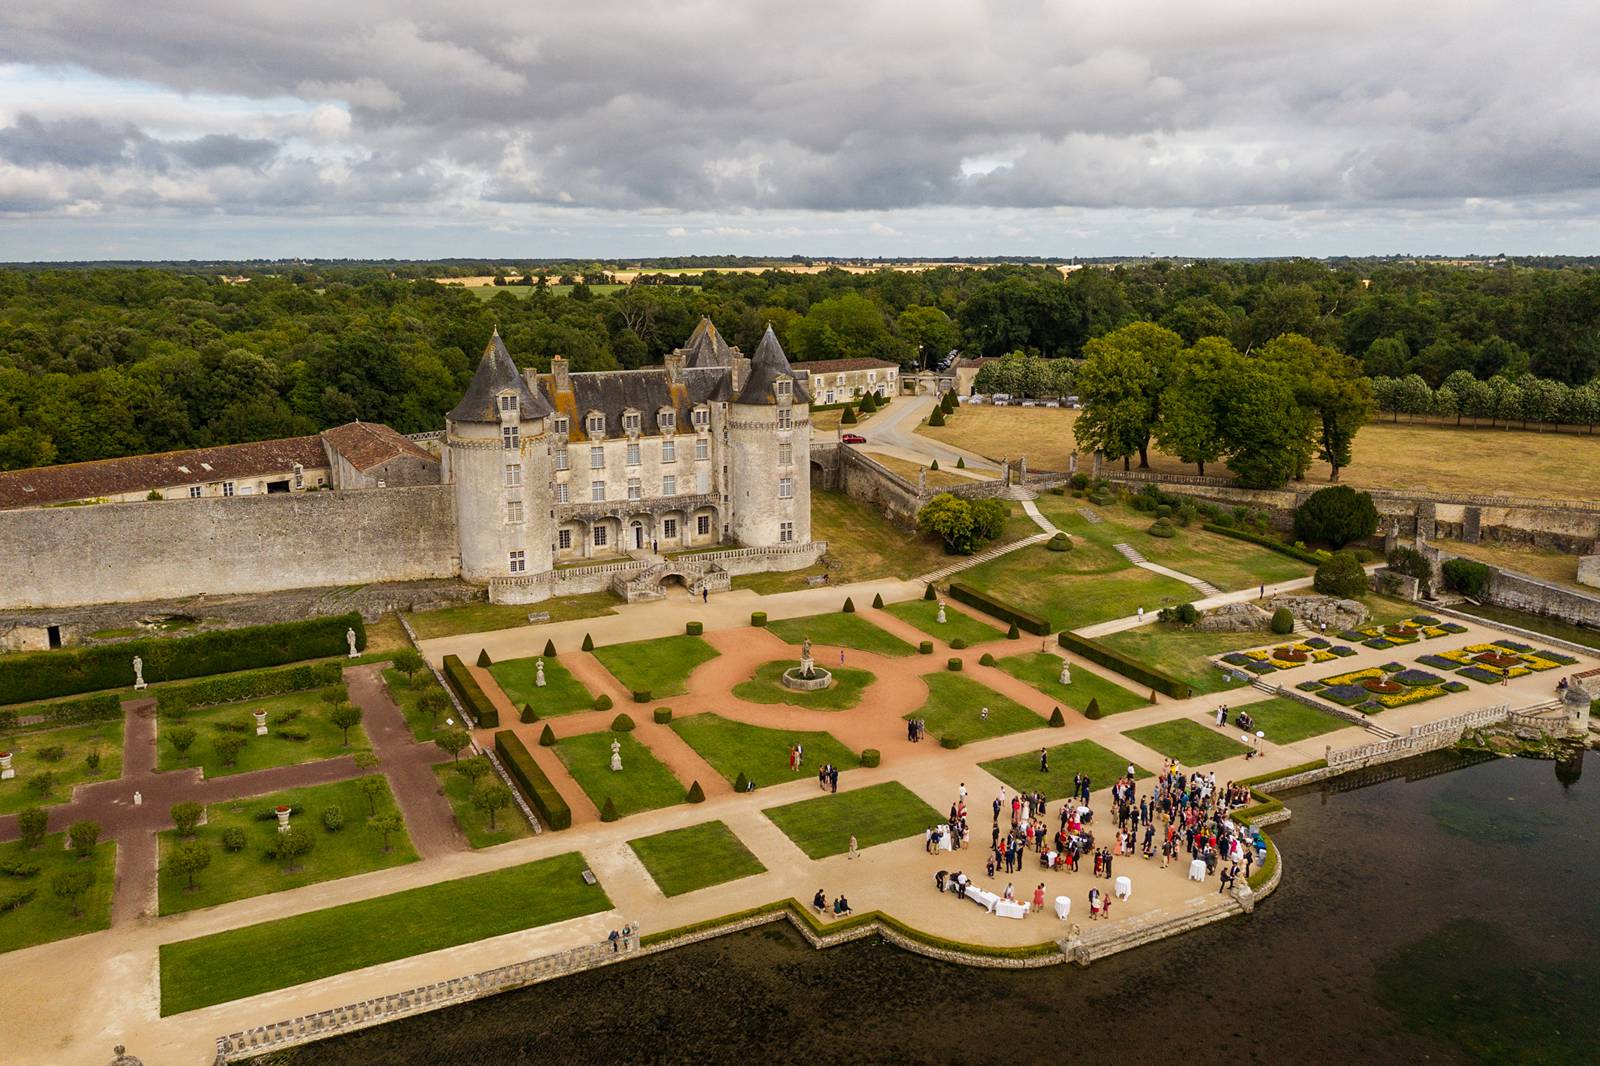 L'aperçu du mariage religieux à Saintes de V+B puis au Château La Roche Courbon en Charentes-Maritime. Alexandre Roschewitz Photographe Mariage.